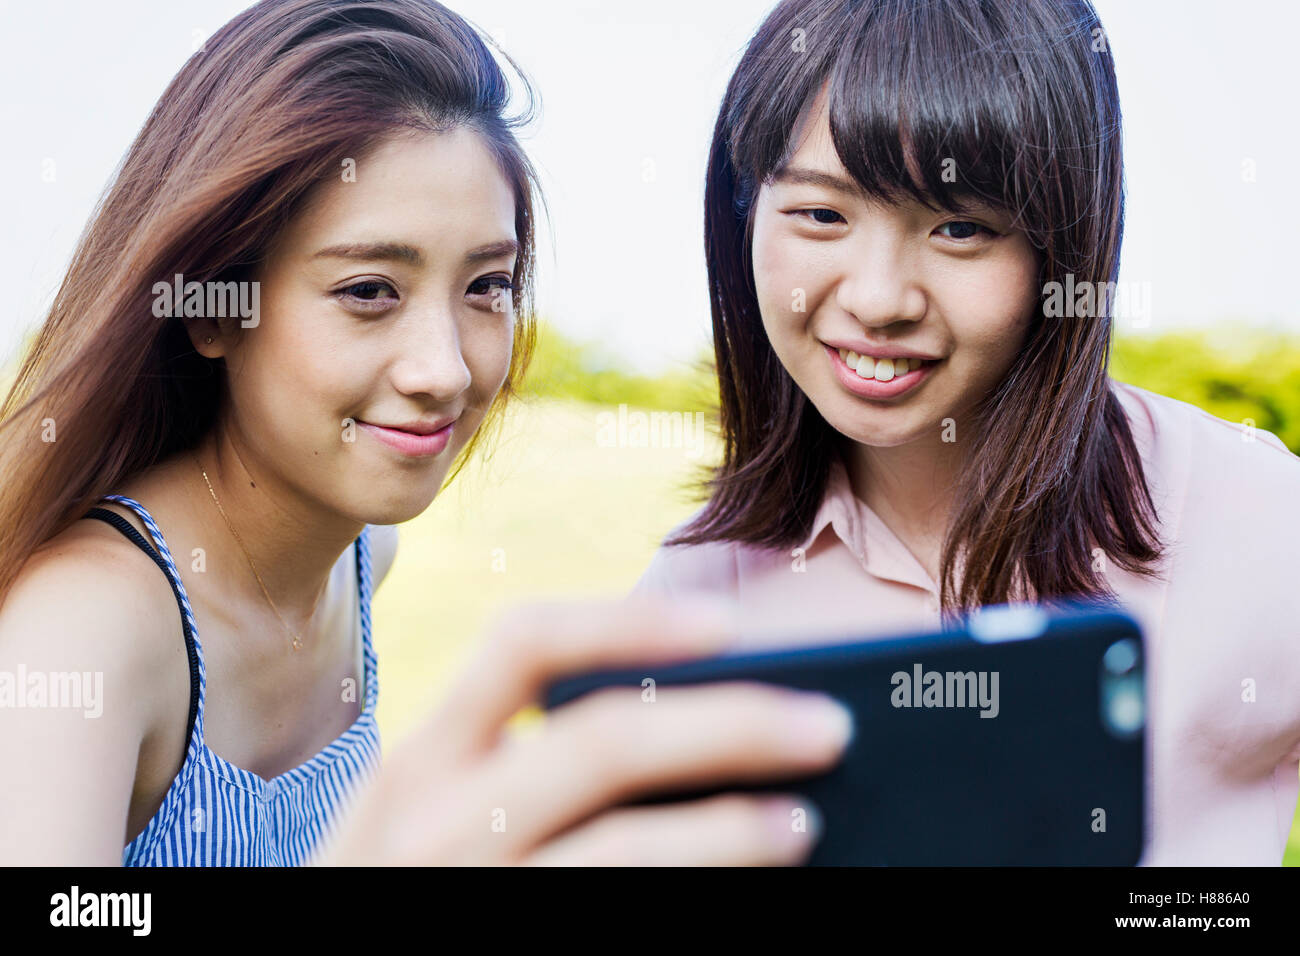 Zwei lächelnde junge Frauen mit langen braunen Haaren, hält ein Handy nehmen Selfie. Stockfoto